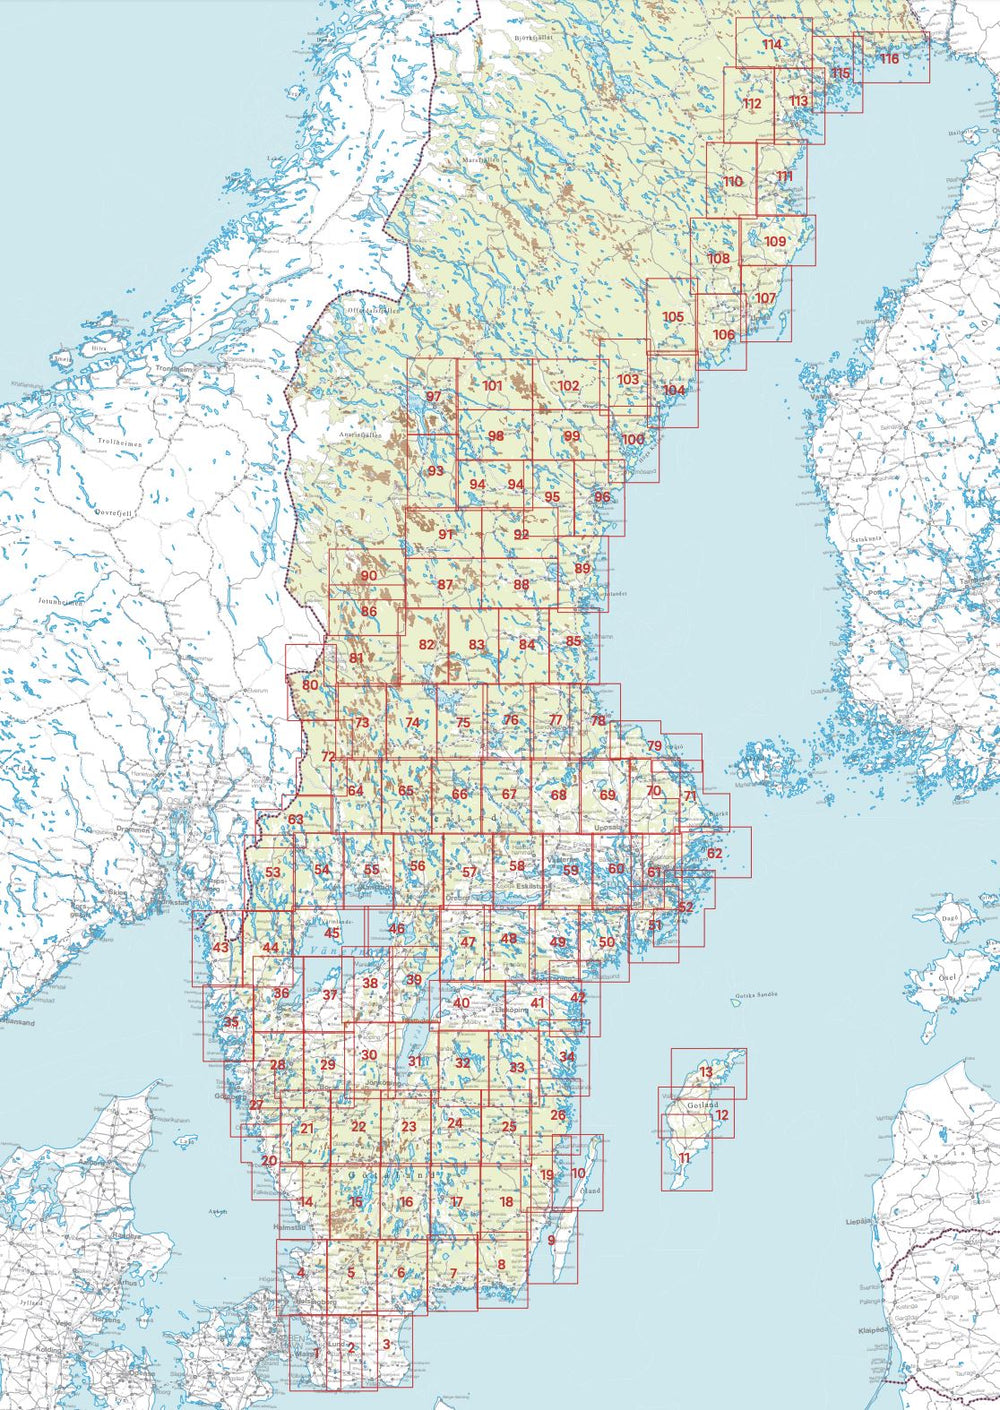 Carte topographique n° 62 - Stockholms Skärgård norra (Suède) | Norstedts - Sverigeserien carte pliée Norstedts 